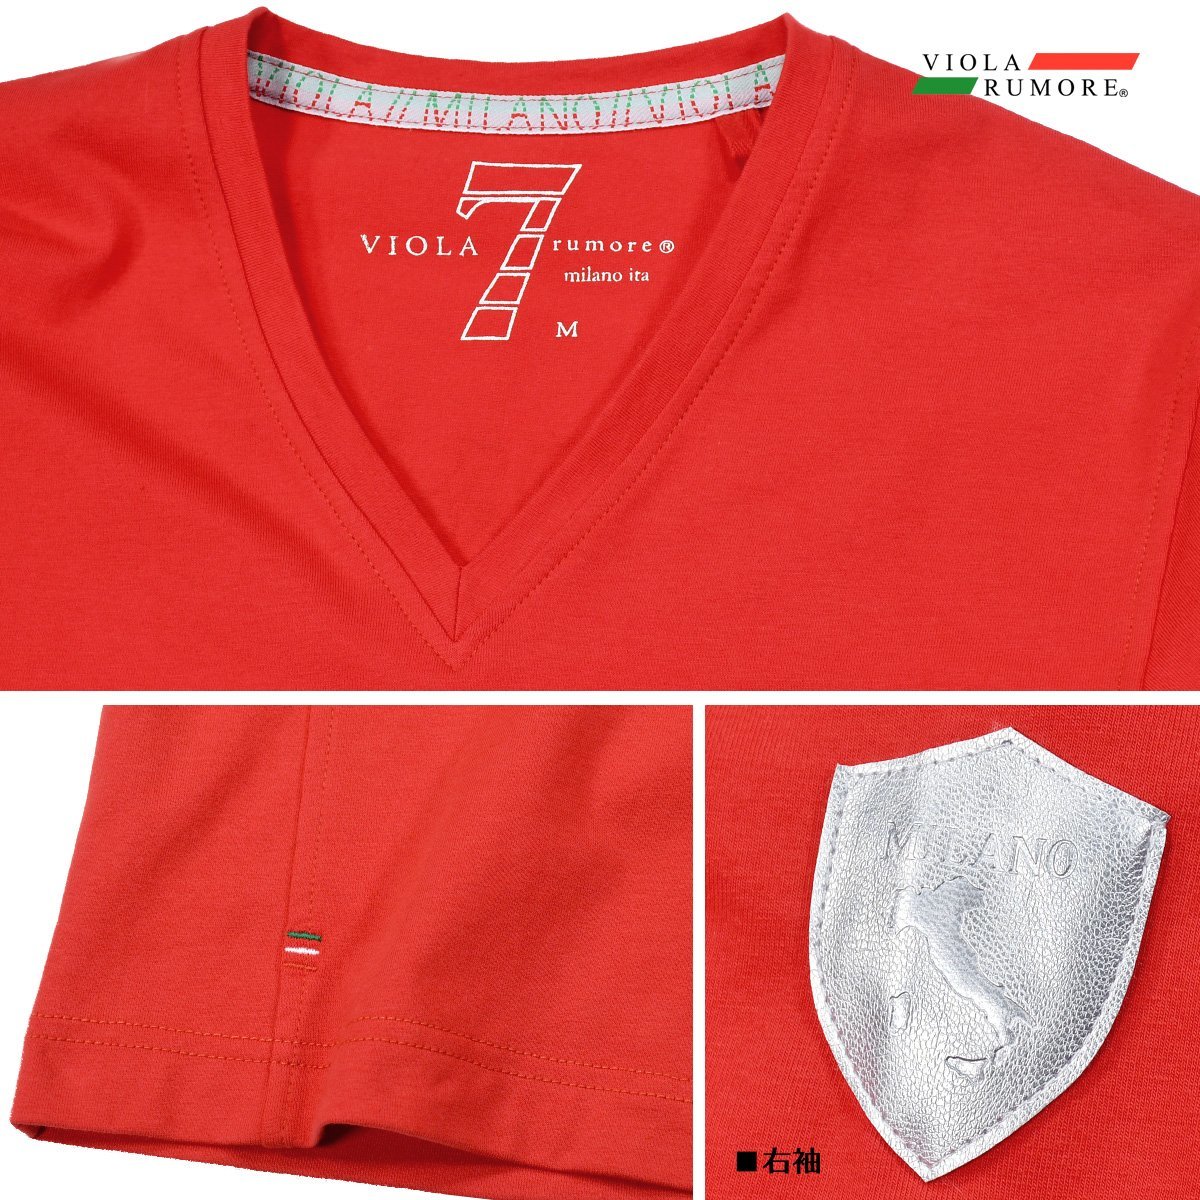 21111-re VIOLA rumore ヴィオラルモーレ ビオラ Tシャツ Vネック 背中プリント 7 シンプル 細身 長袖Tシャツ メンズ(レッド赤) XL_画像5